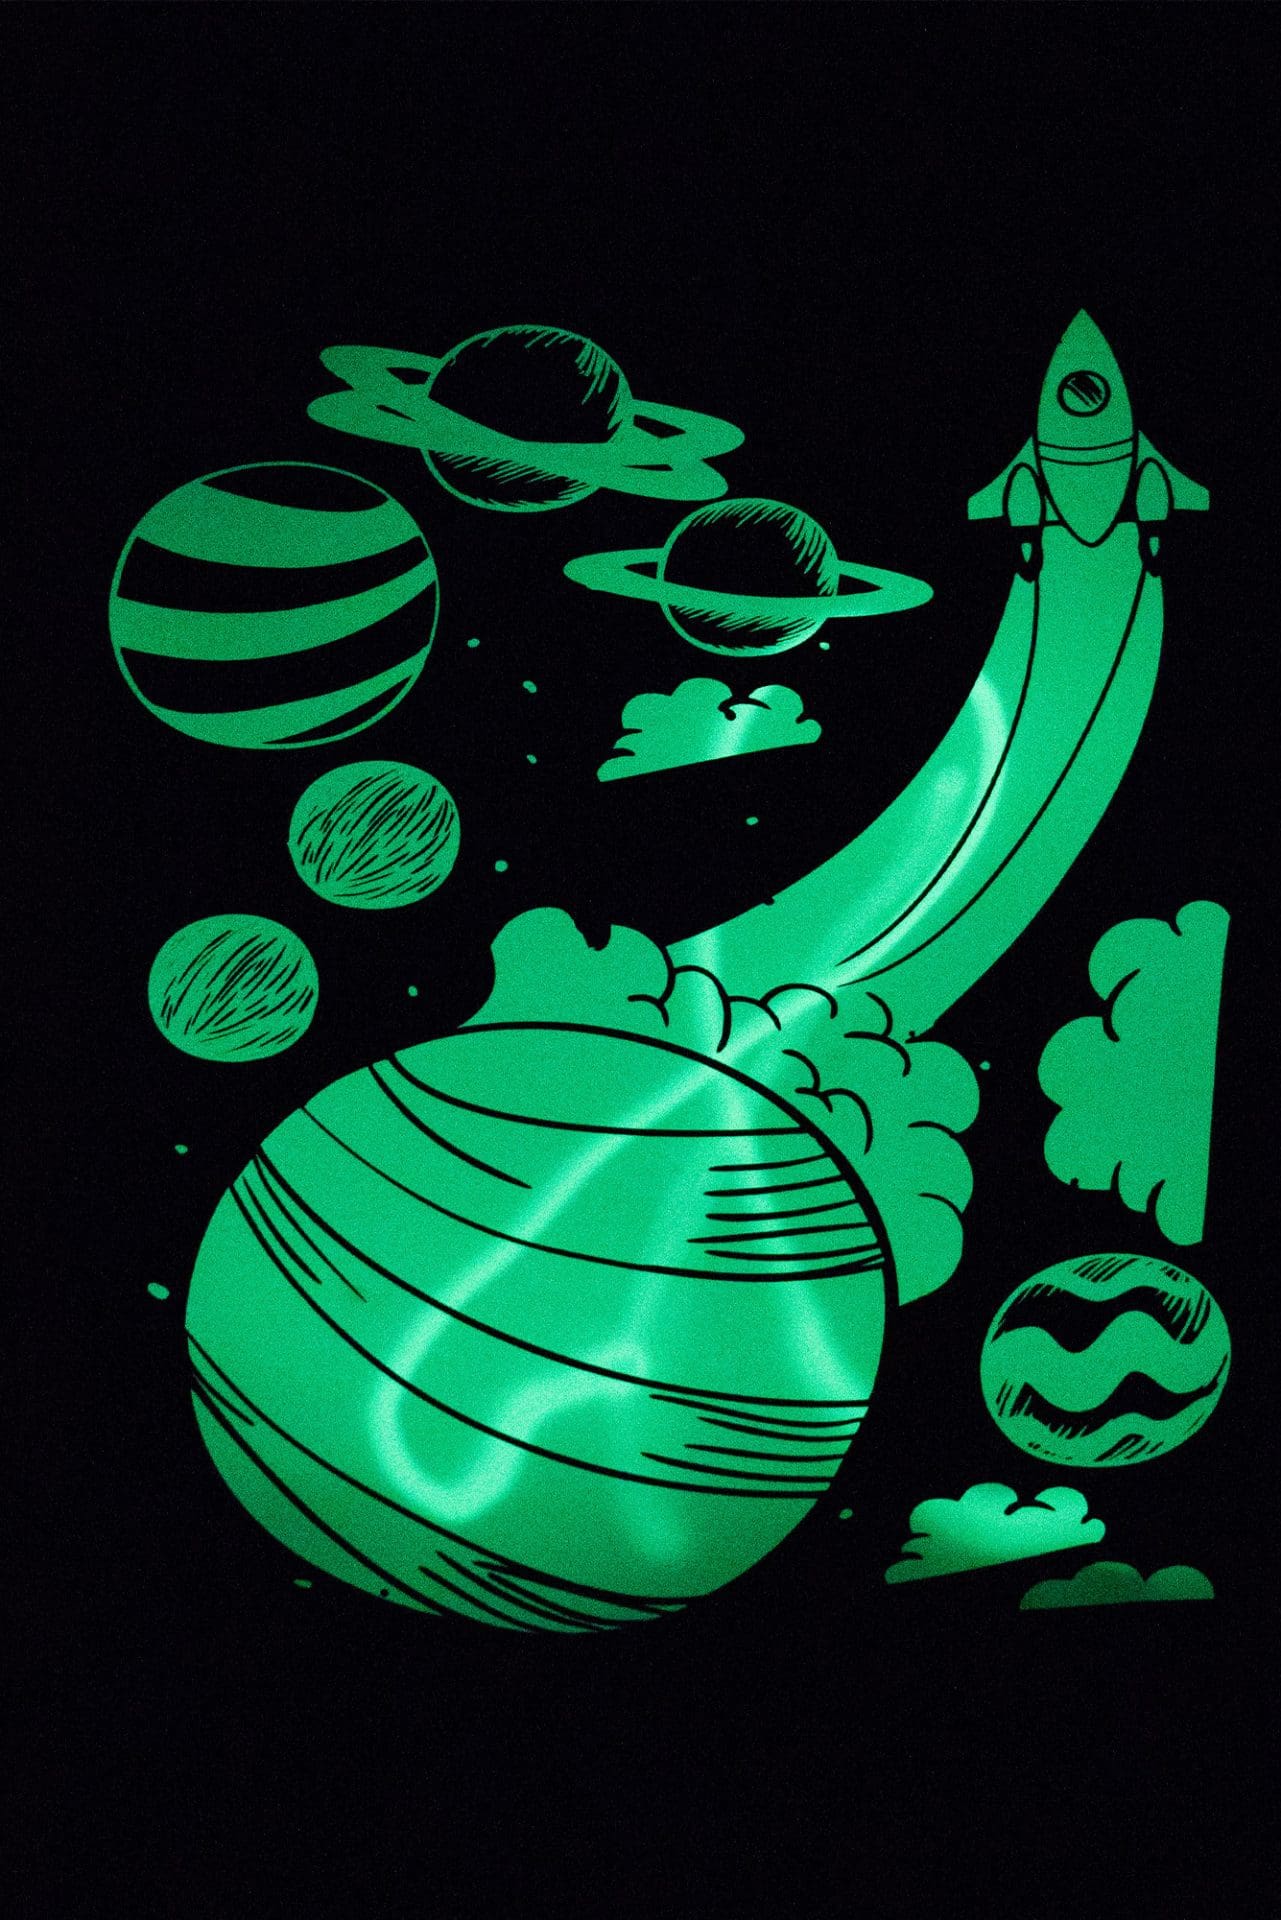 детска червена тениска 100% висококачествен памук със светеща щампа на ракета и планети с включено UV фенерче за рисуване върху щампата